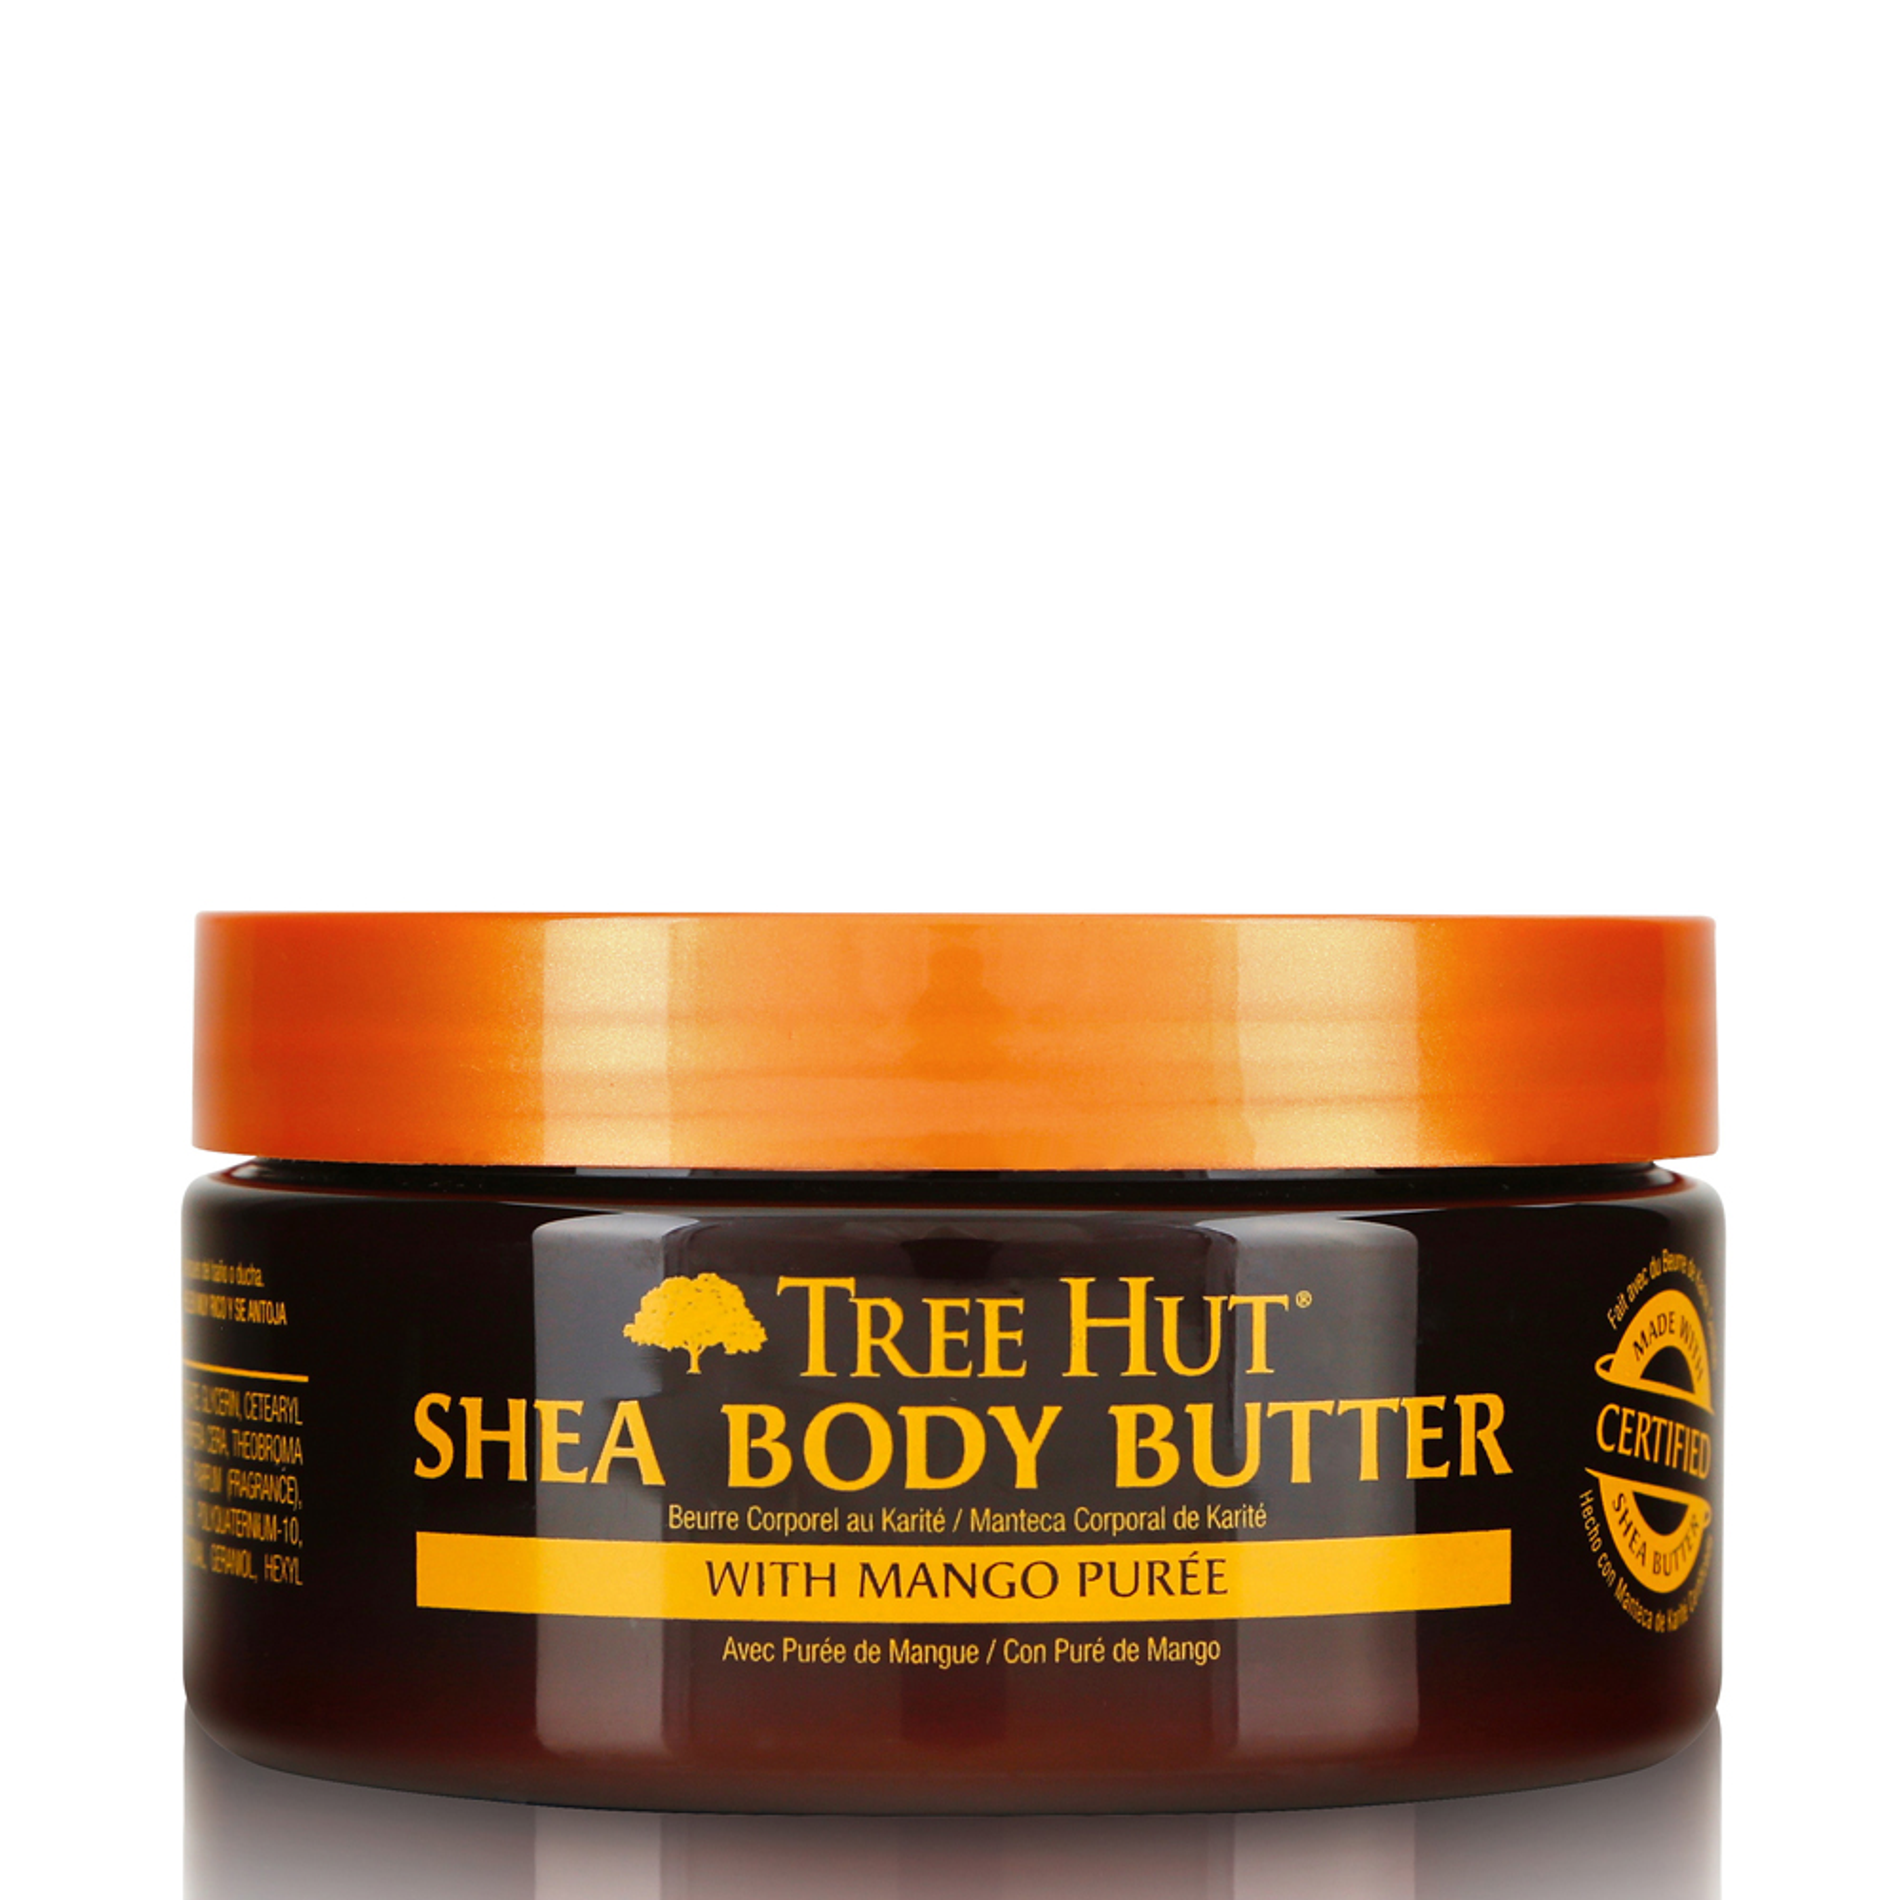 bo-duong-the-tree-hut-24-hour-intense-hydrating-shea-body-butter-198g-5